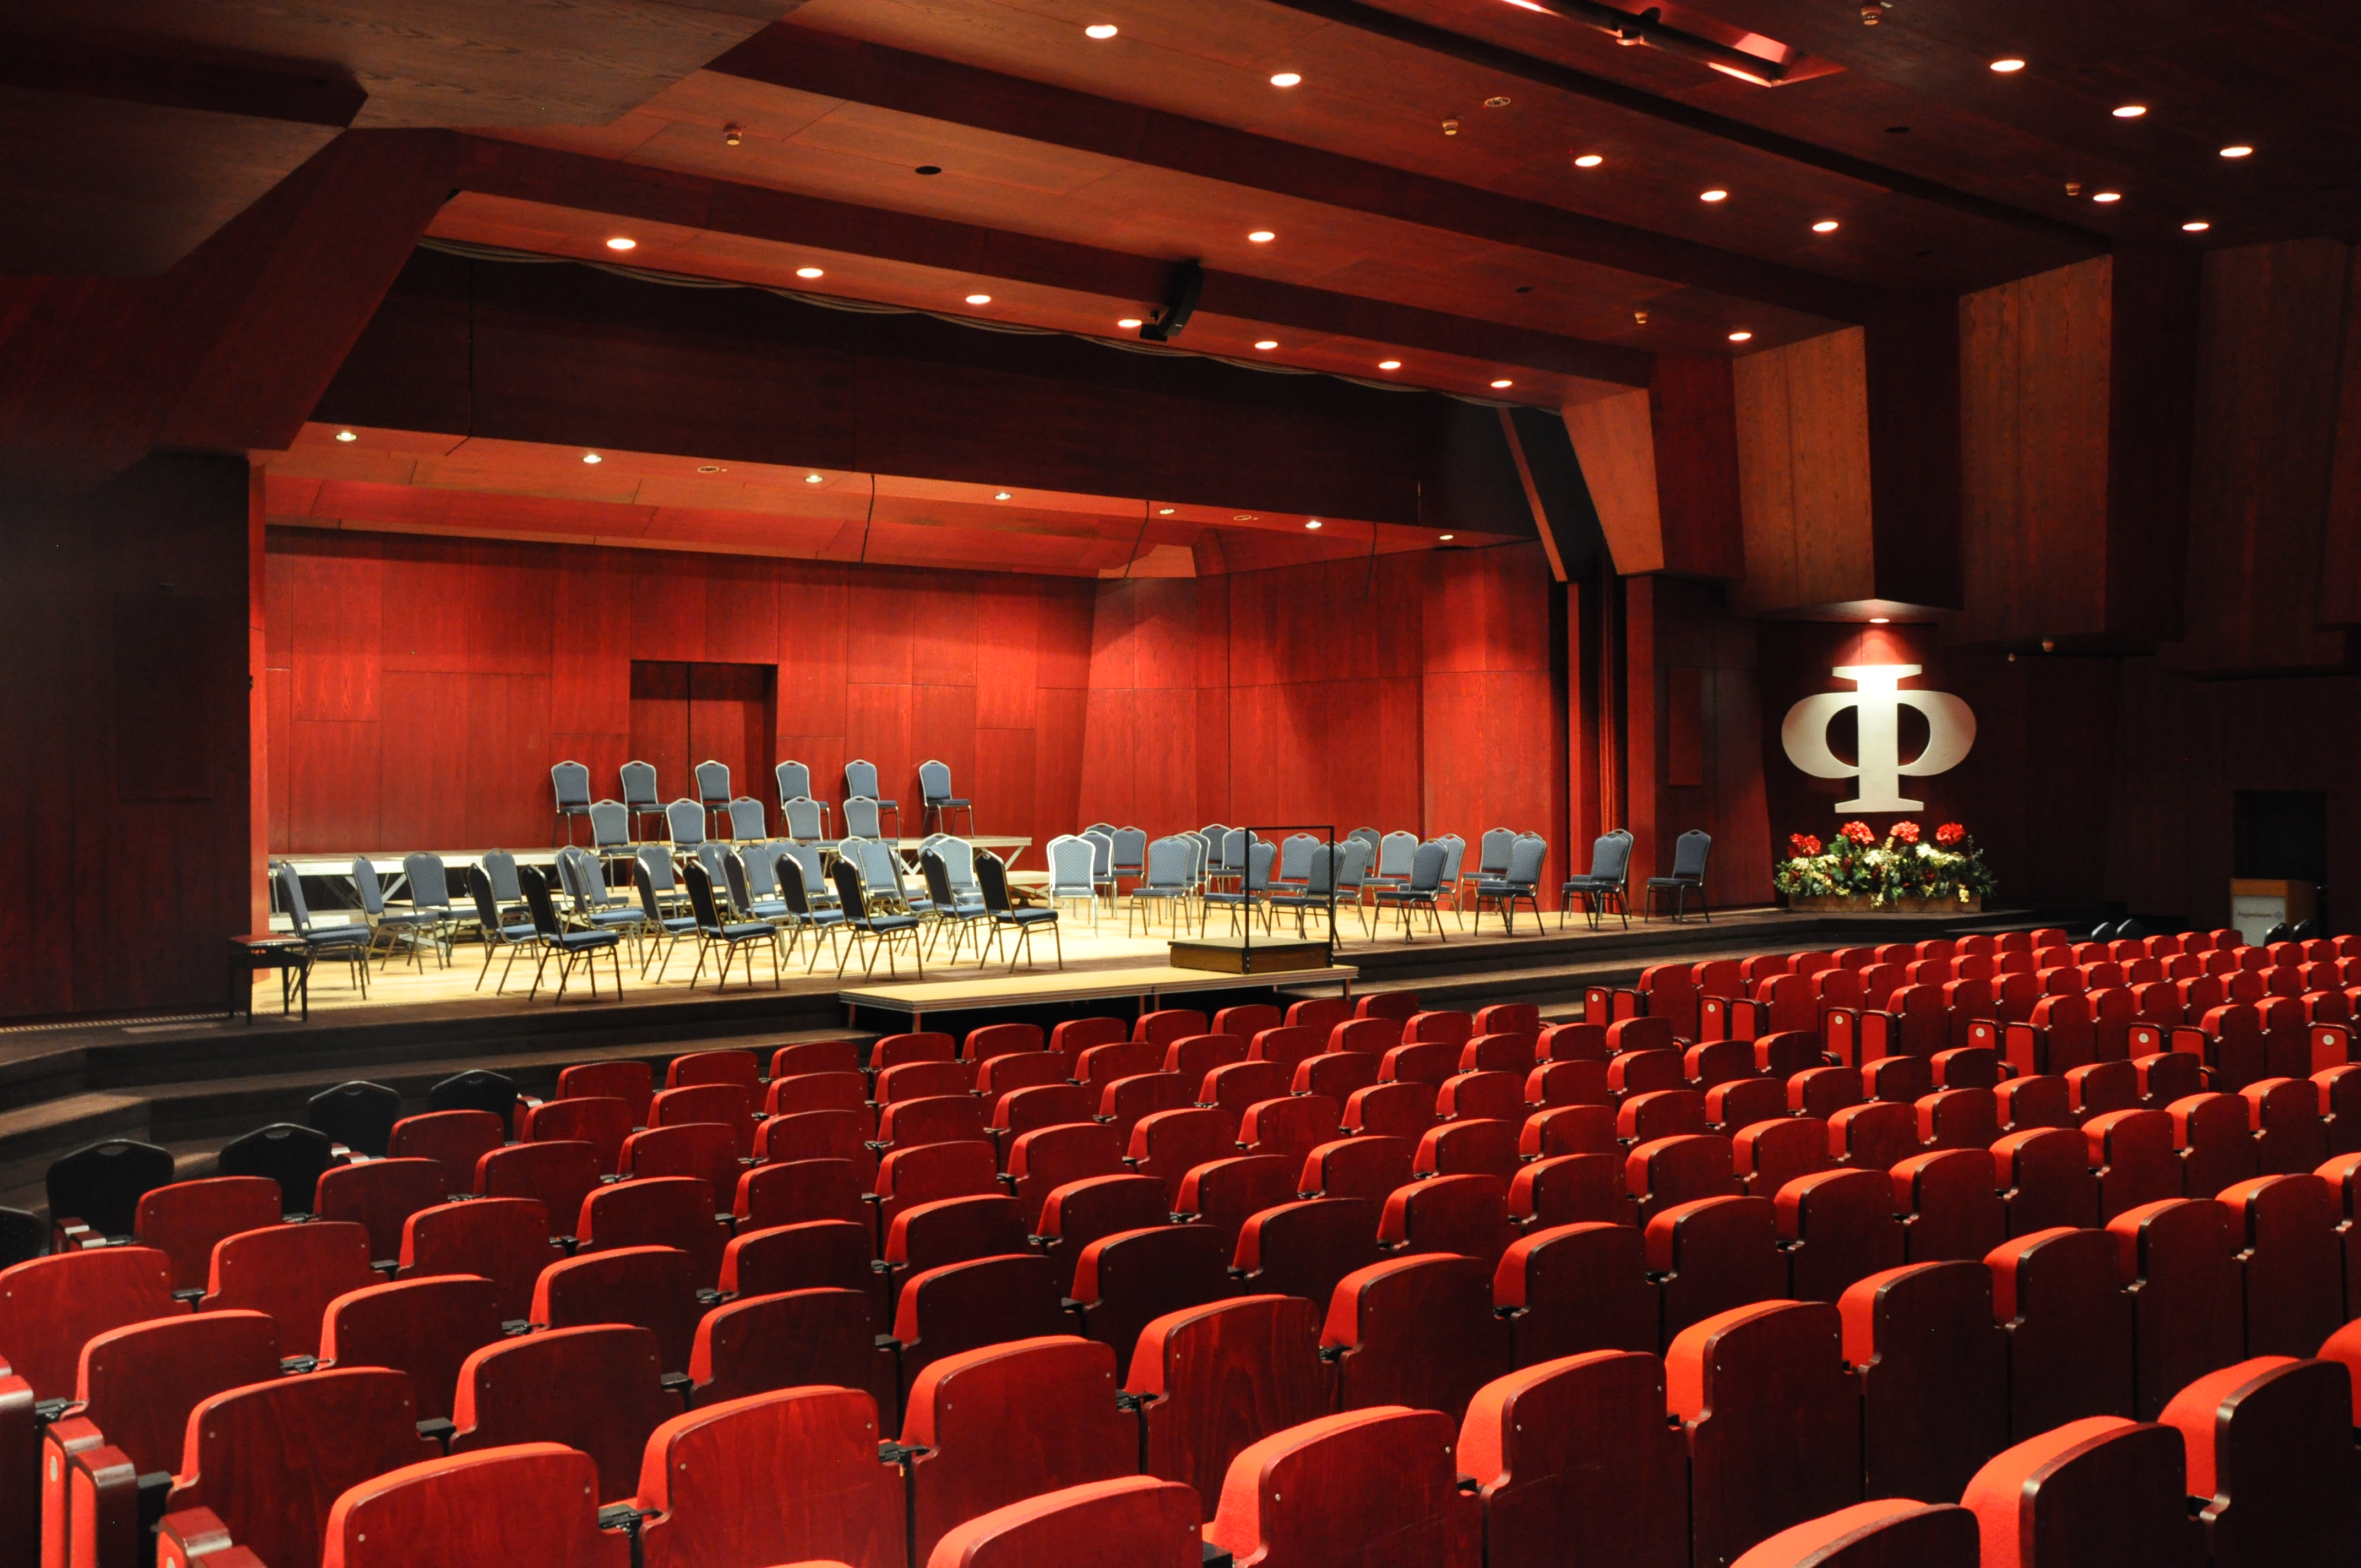 Der große Saal im Augustinum, hier mit dem Bühnenaufbau für ein Orchesterkonzert